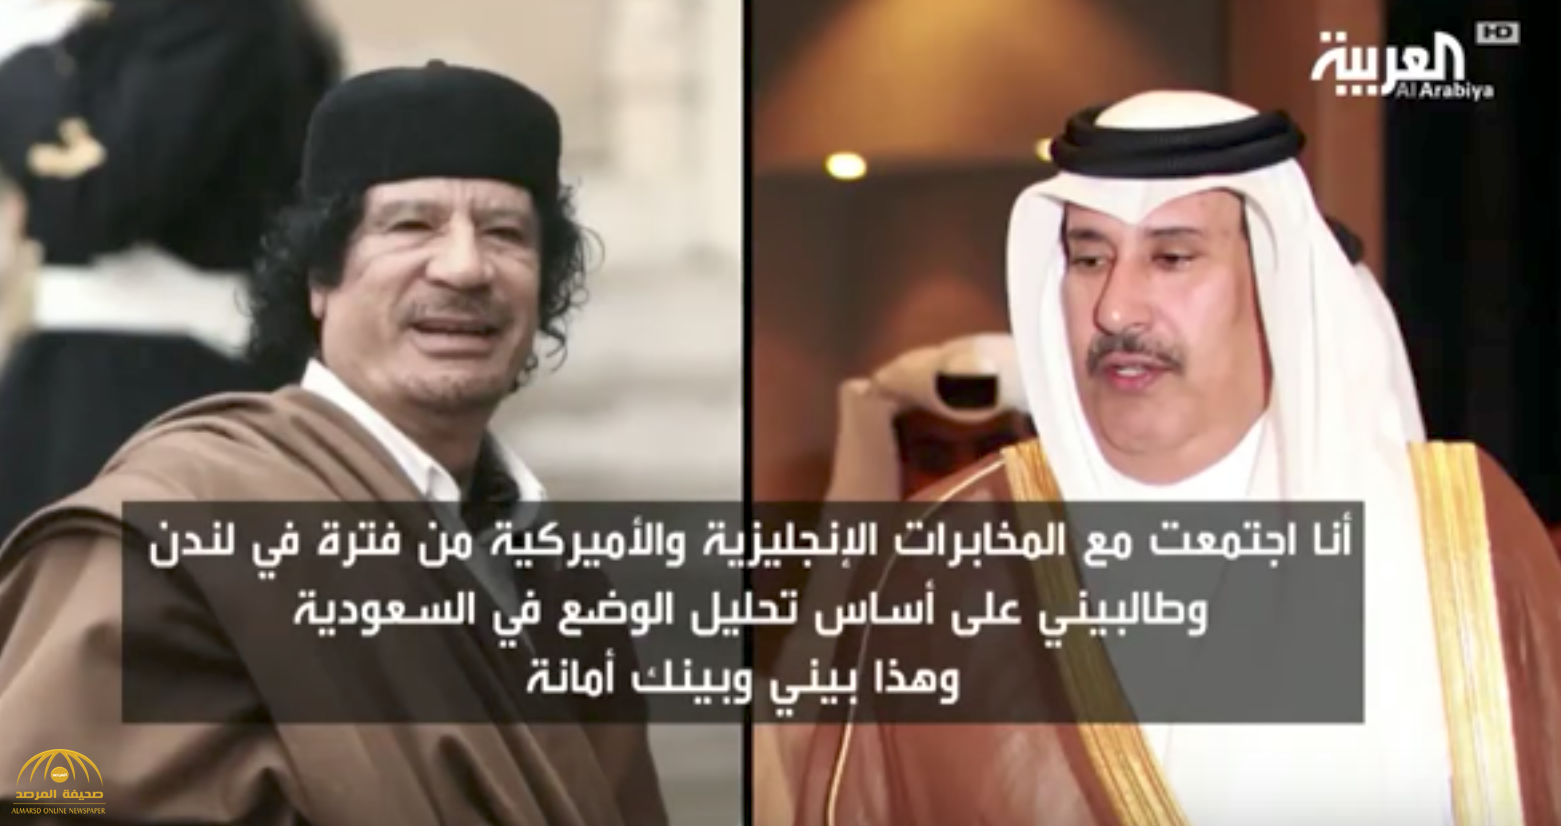 بالفيديو: تسريبات لـ"حمد بن جاسم" تكشف  رغبته في تقسيم السعودية.. ولهذا السبب استعانت به قطر بعد قطع العلاقات!